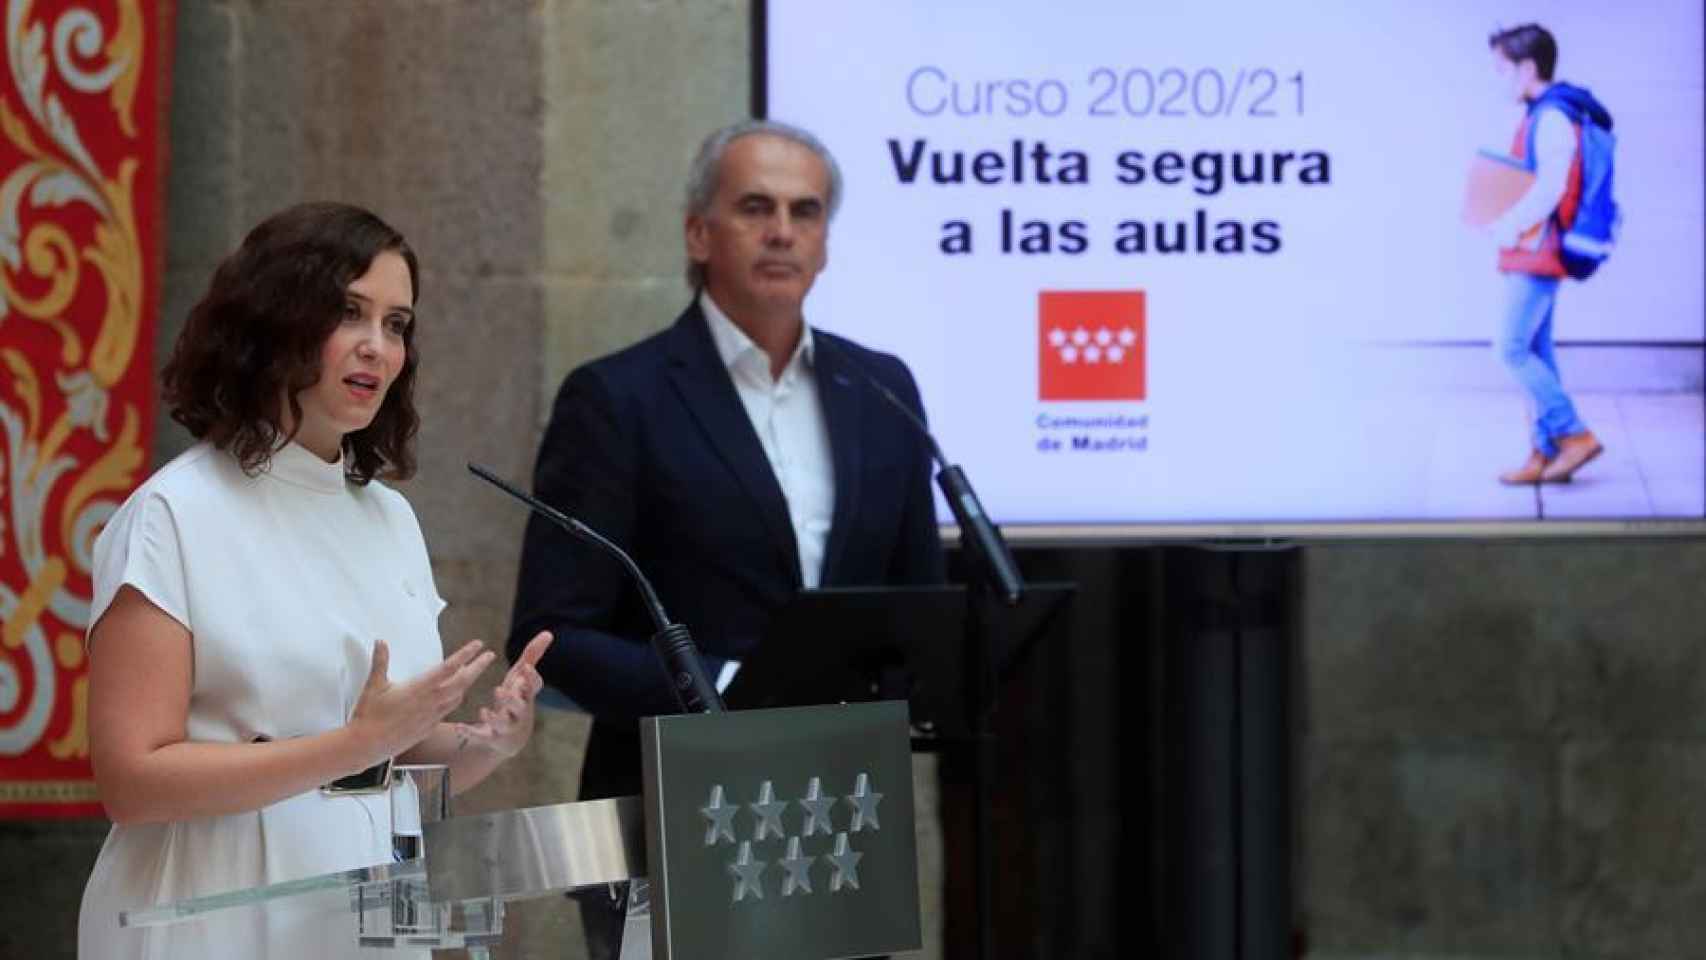 La presidenta de la Comunidad de Madrid, Isabel Díaz Ayuso, y el consejero de Educación, Enrique Ossorio, anuncian el plan para la vuelta al colegio.